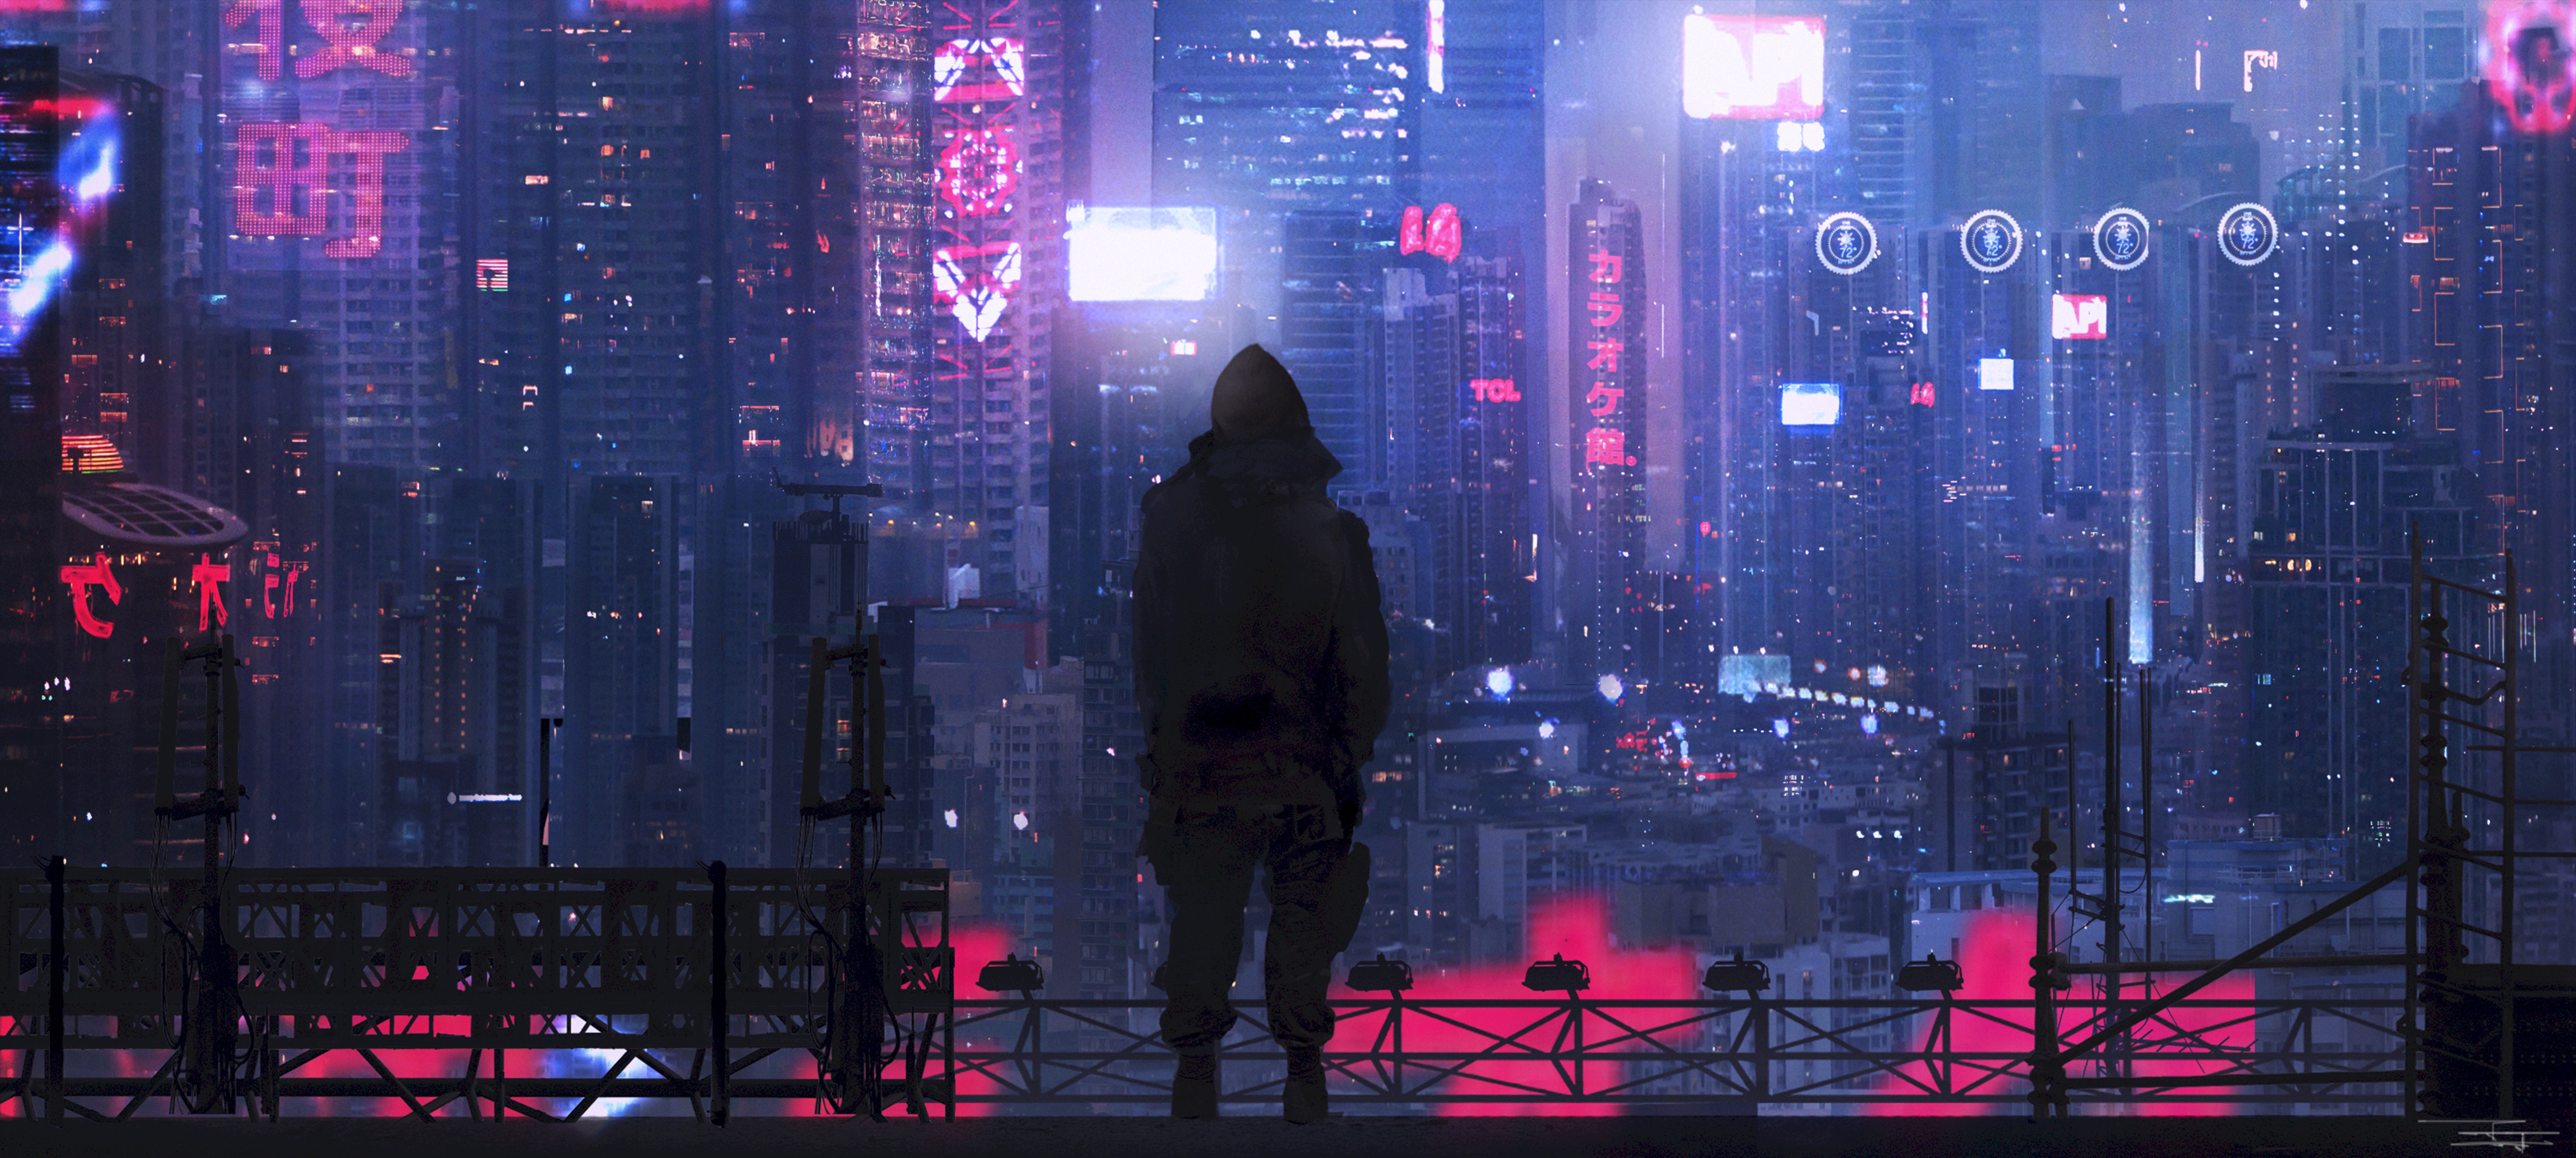 sci fi, art, cyberpunk, silhouette, city, futurism